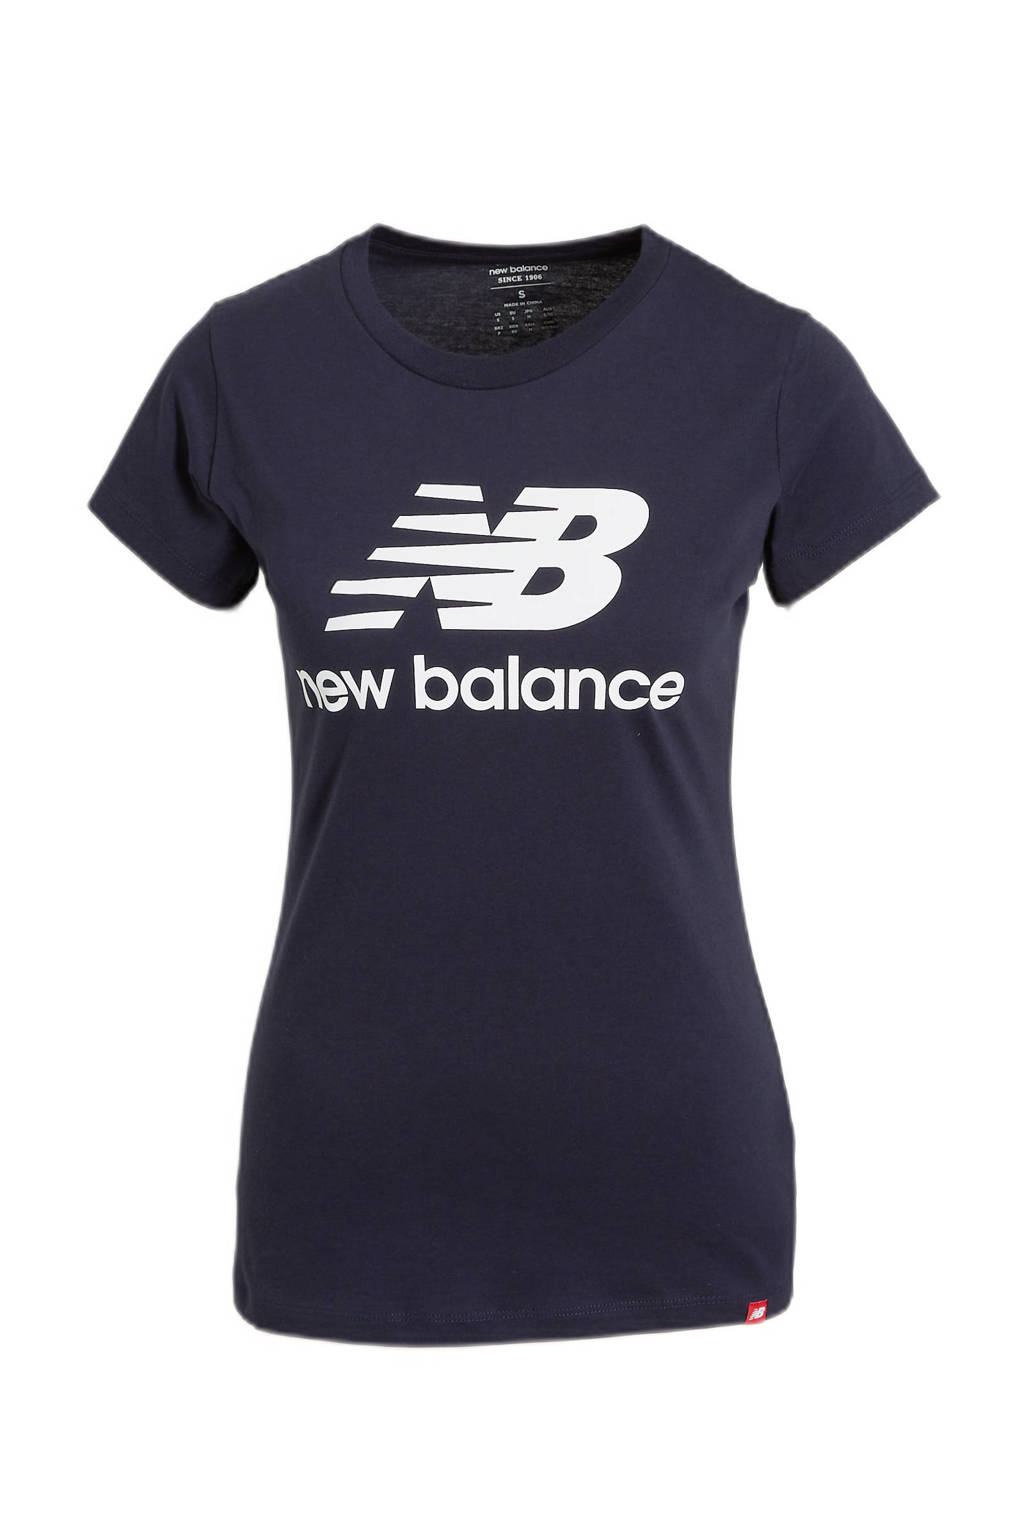 Donkerblauw en witte dames New Balance T-shirt van katoen met logo dessin, korte mouwen en ronde hals